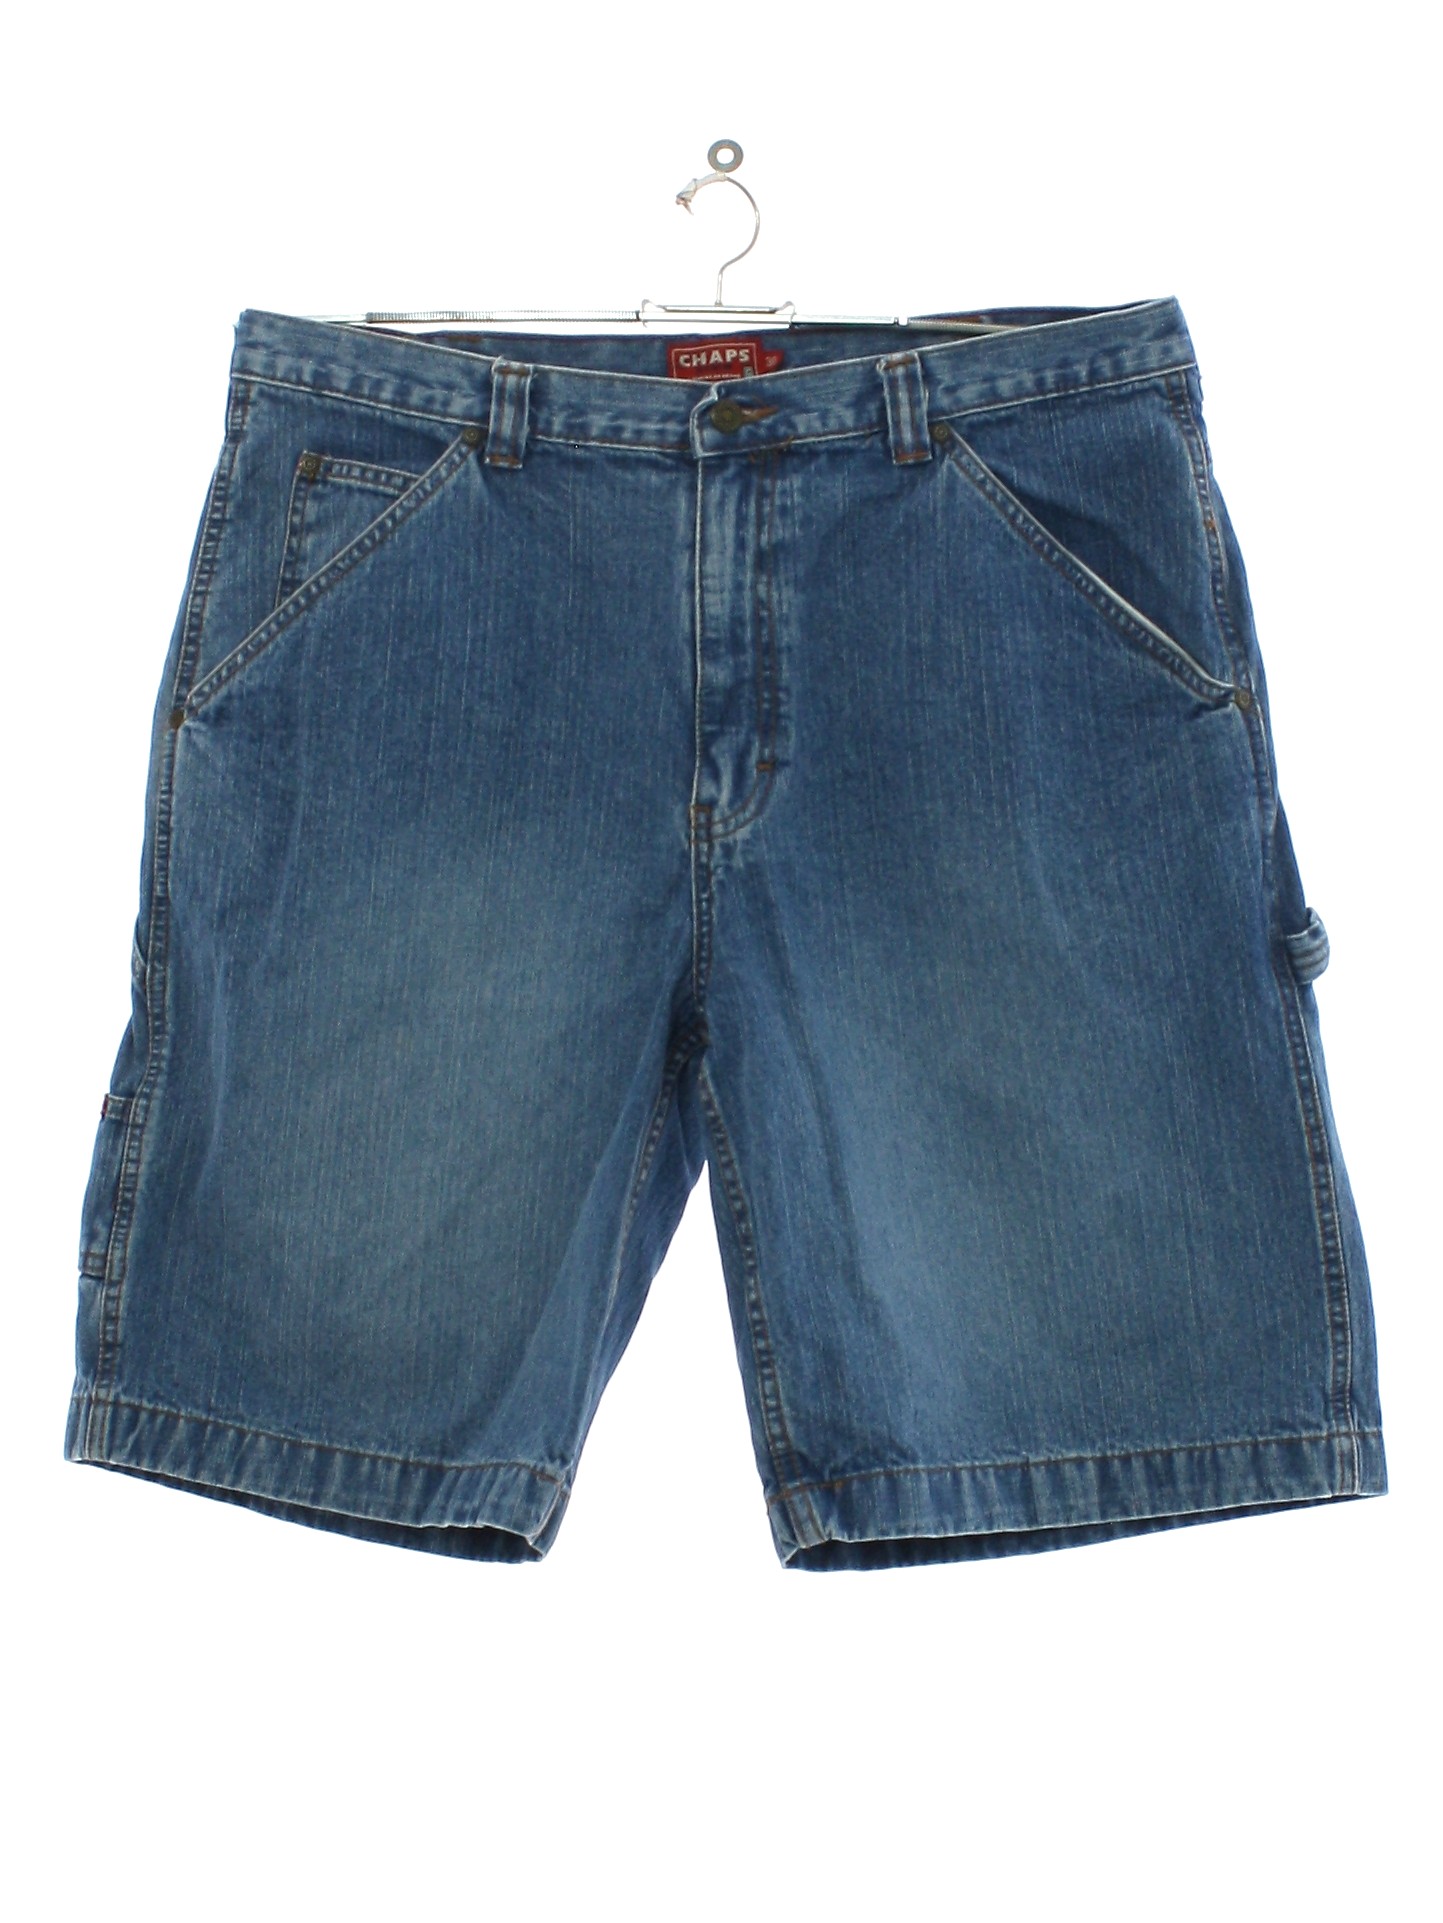 Vintage Chaps Denim 1990s Shorts: 90s -Chaps Denim- Mens medium blue ...